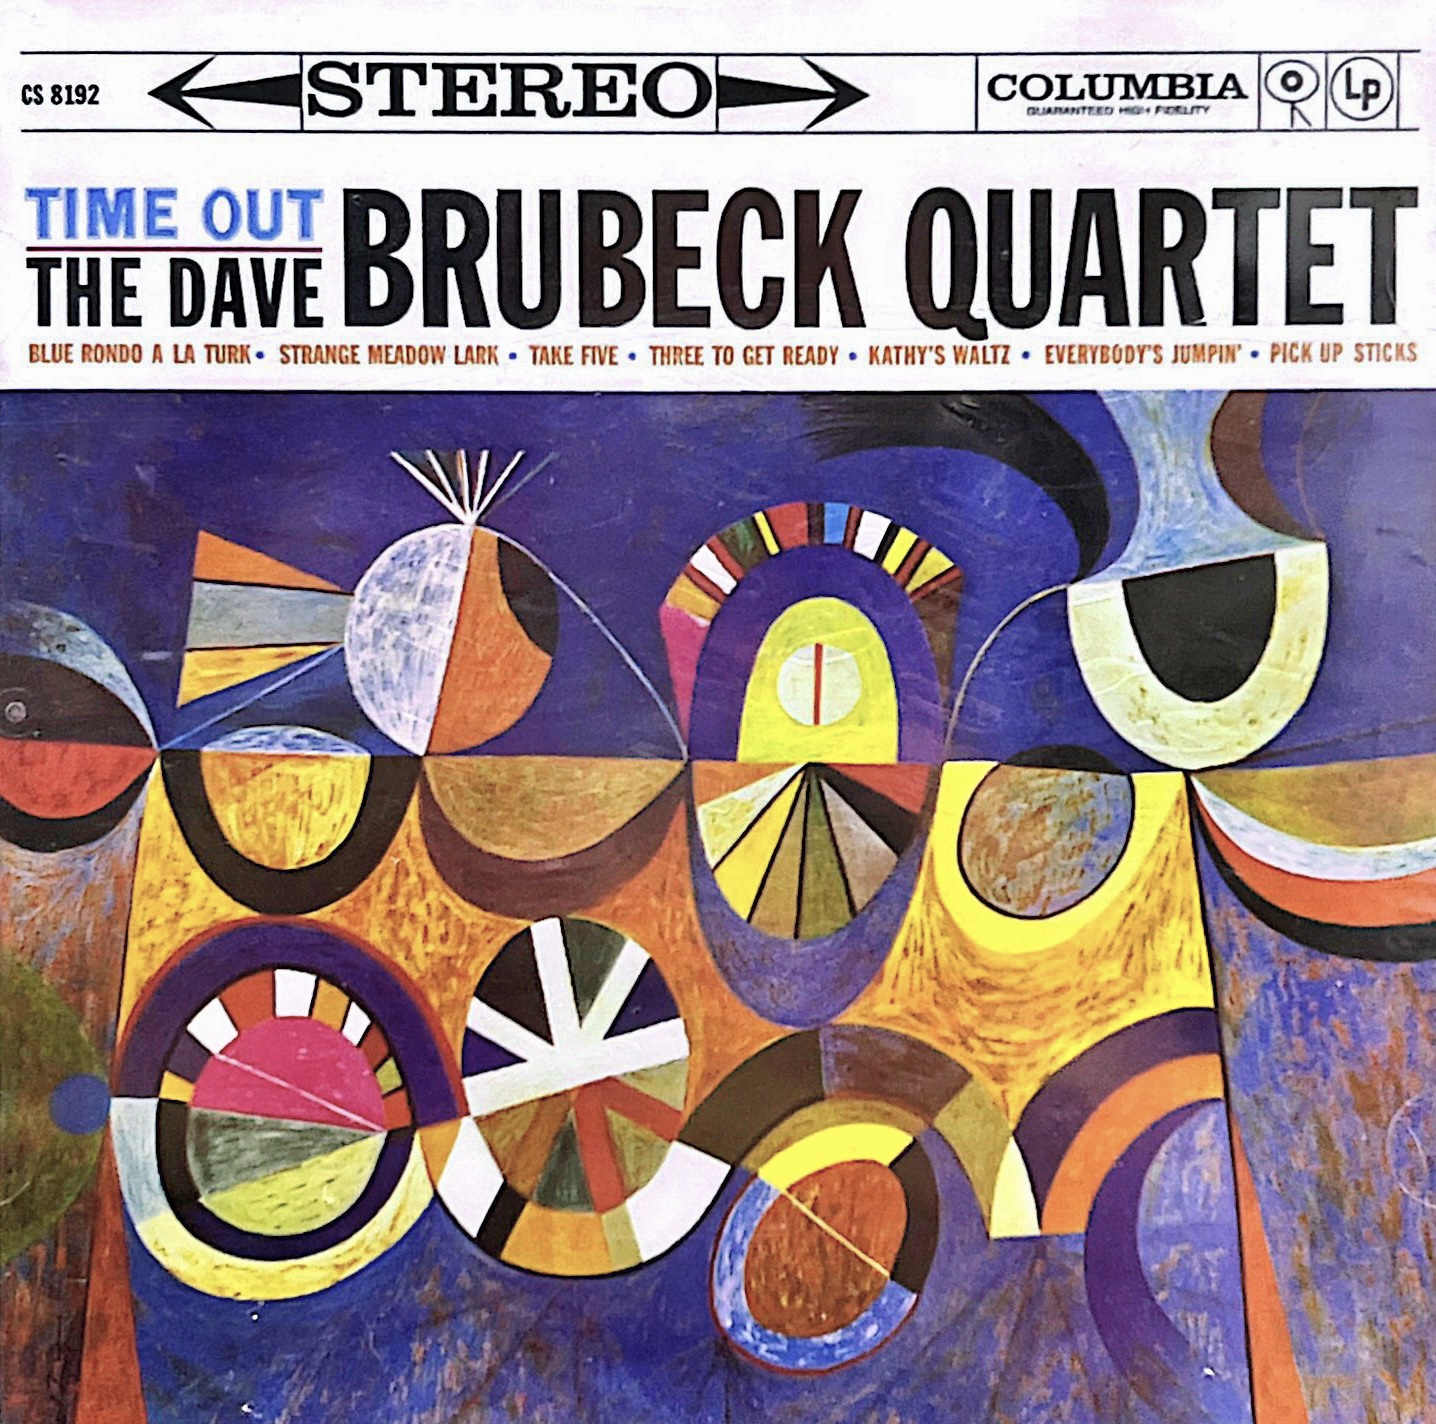 Time Out - The Dave Brubeck Quartet, Dave Brubeck - AllMusic